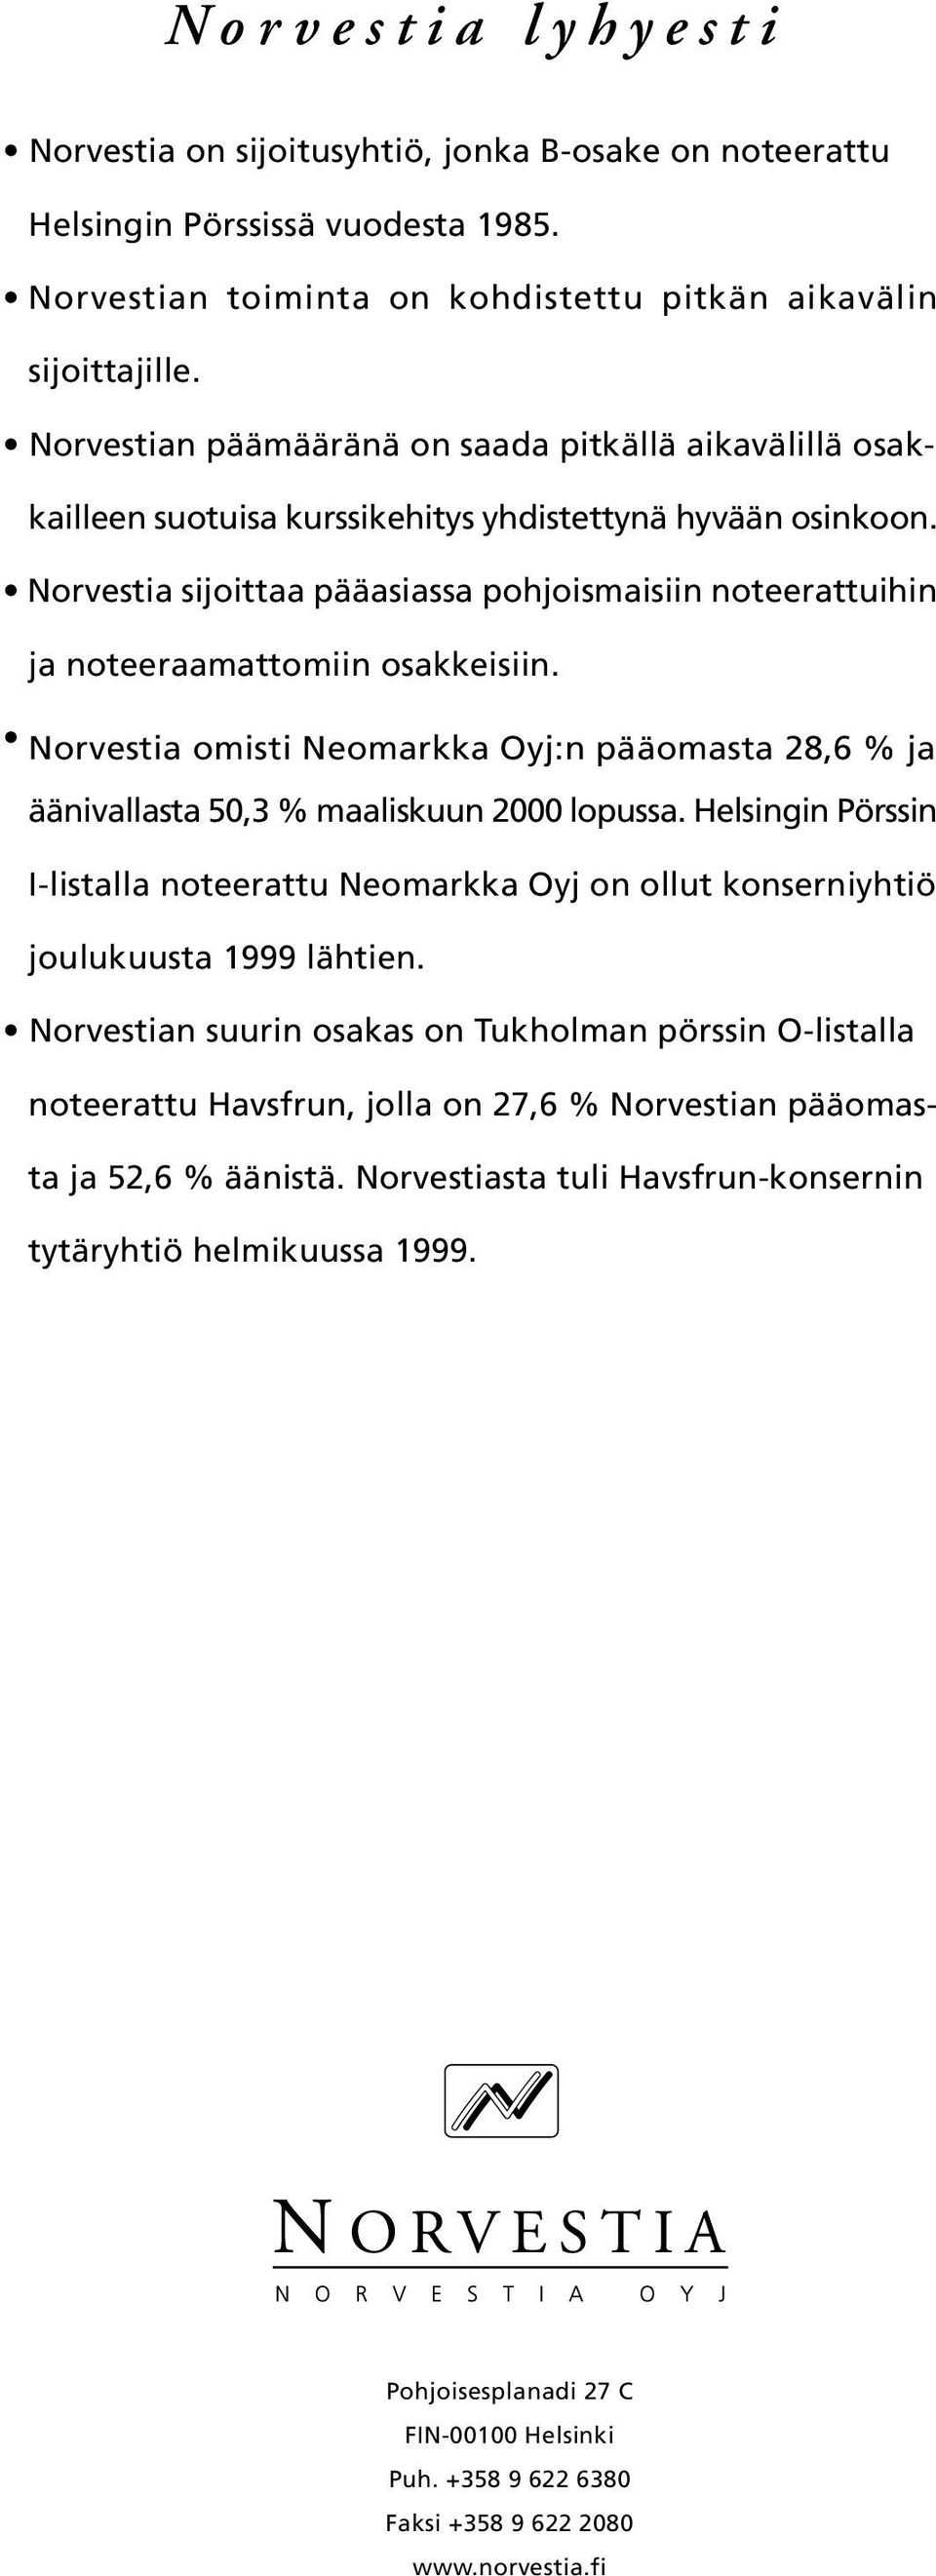 Norvestia sijoittaa pääasiassa pohjoismaisiin noteerattuihin ja noteeraamattomiin osakkeisiin. Norvestia omisti Neomarkka Oyj:n pääomasta 28,6 % ja äänivallasta 50,3 % maaliskuun 2000 lopussa.